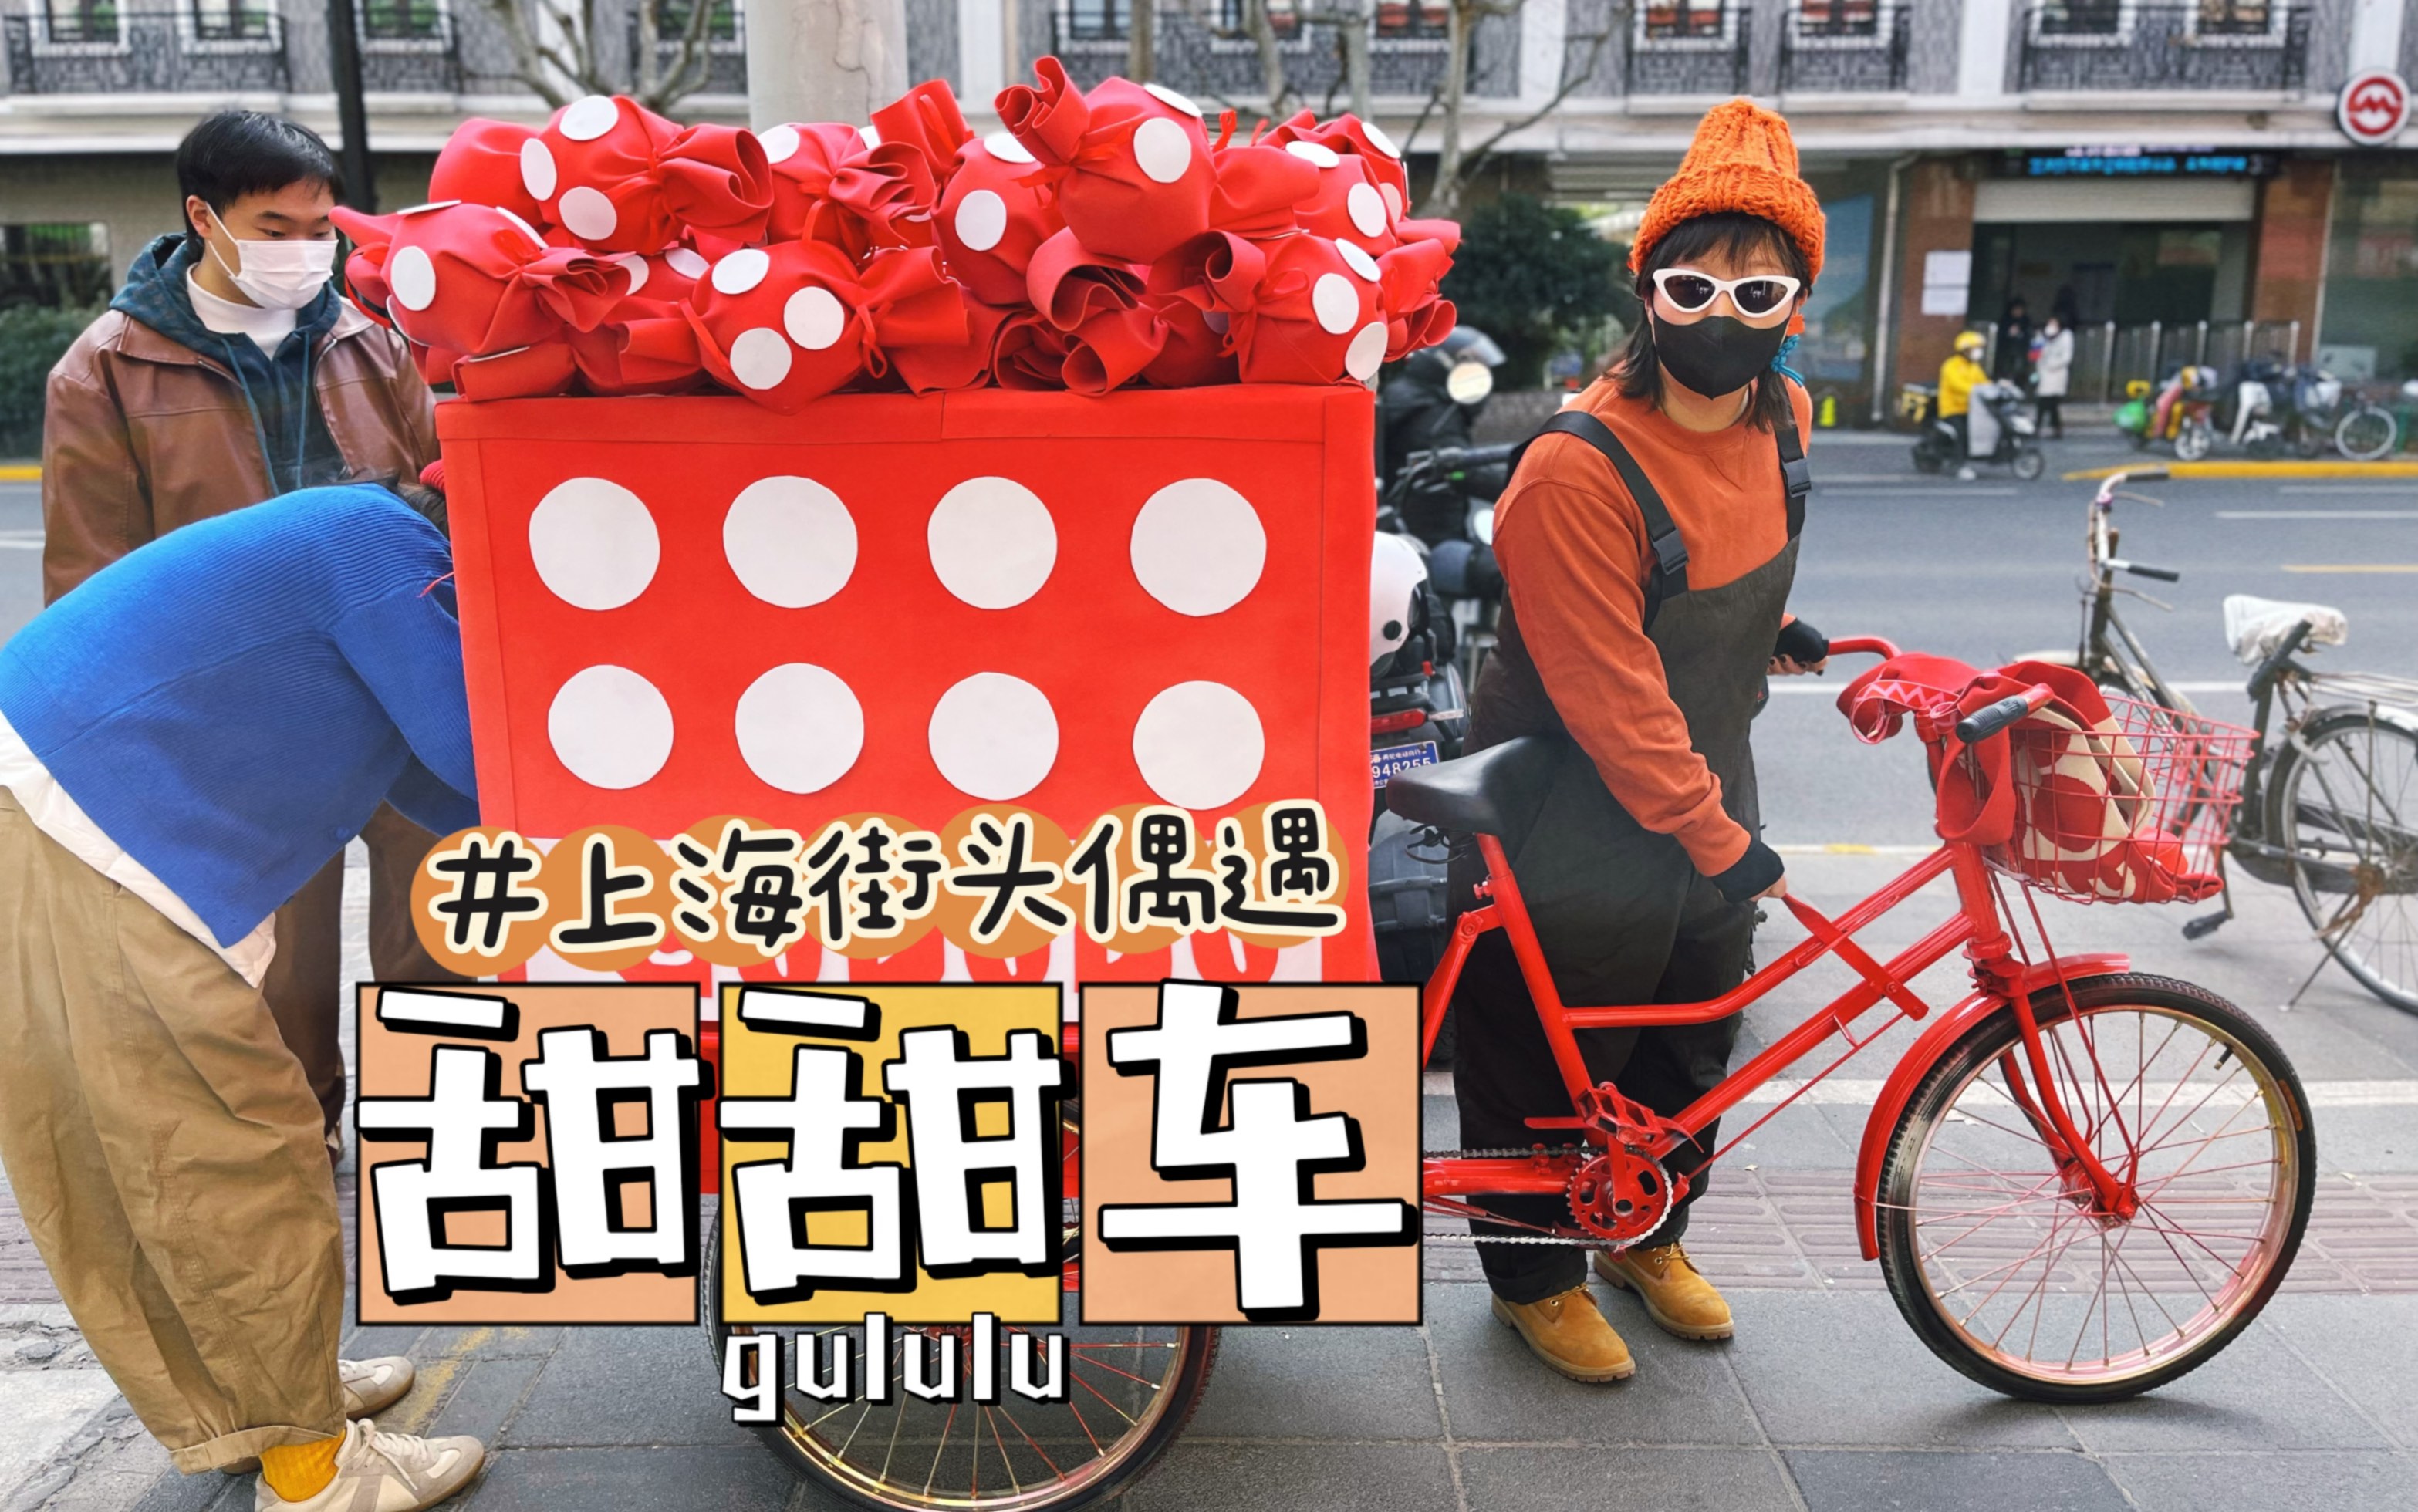 土豆车之后上海又来了一辆更好玩的糖果甜甜车，猜猜是卖什么的？